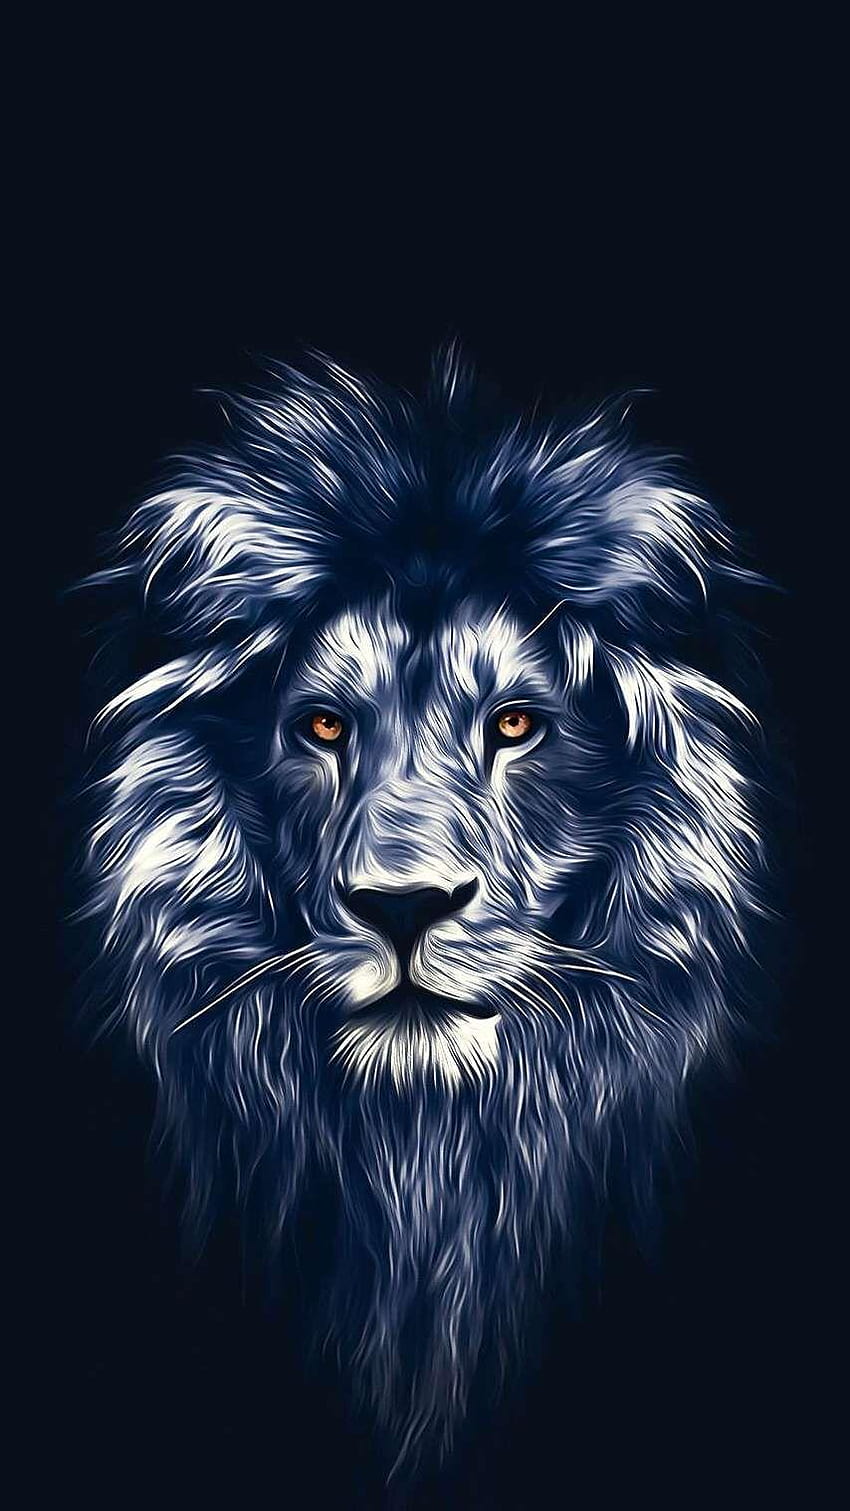 Lion Face Art iPhone, lion art HD phone wallpaper